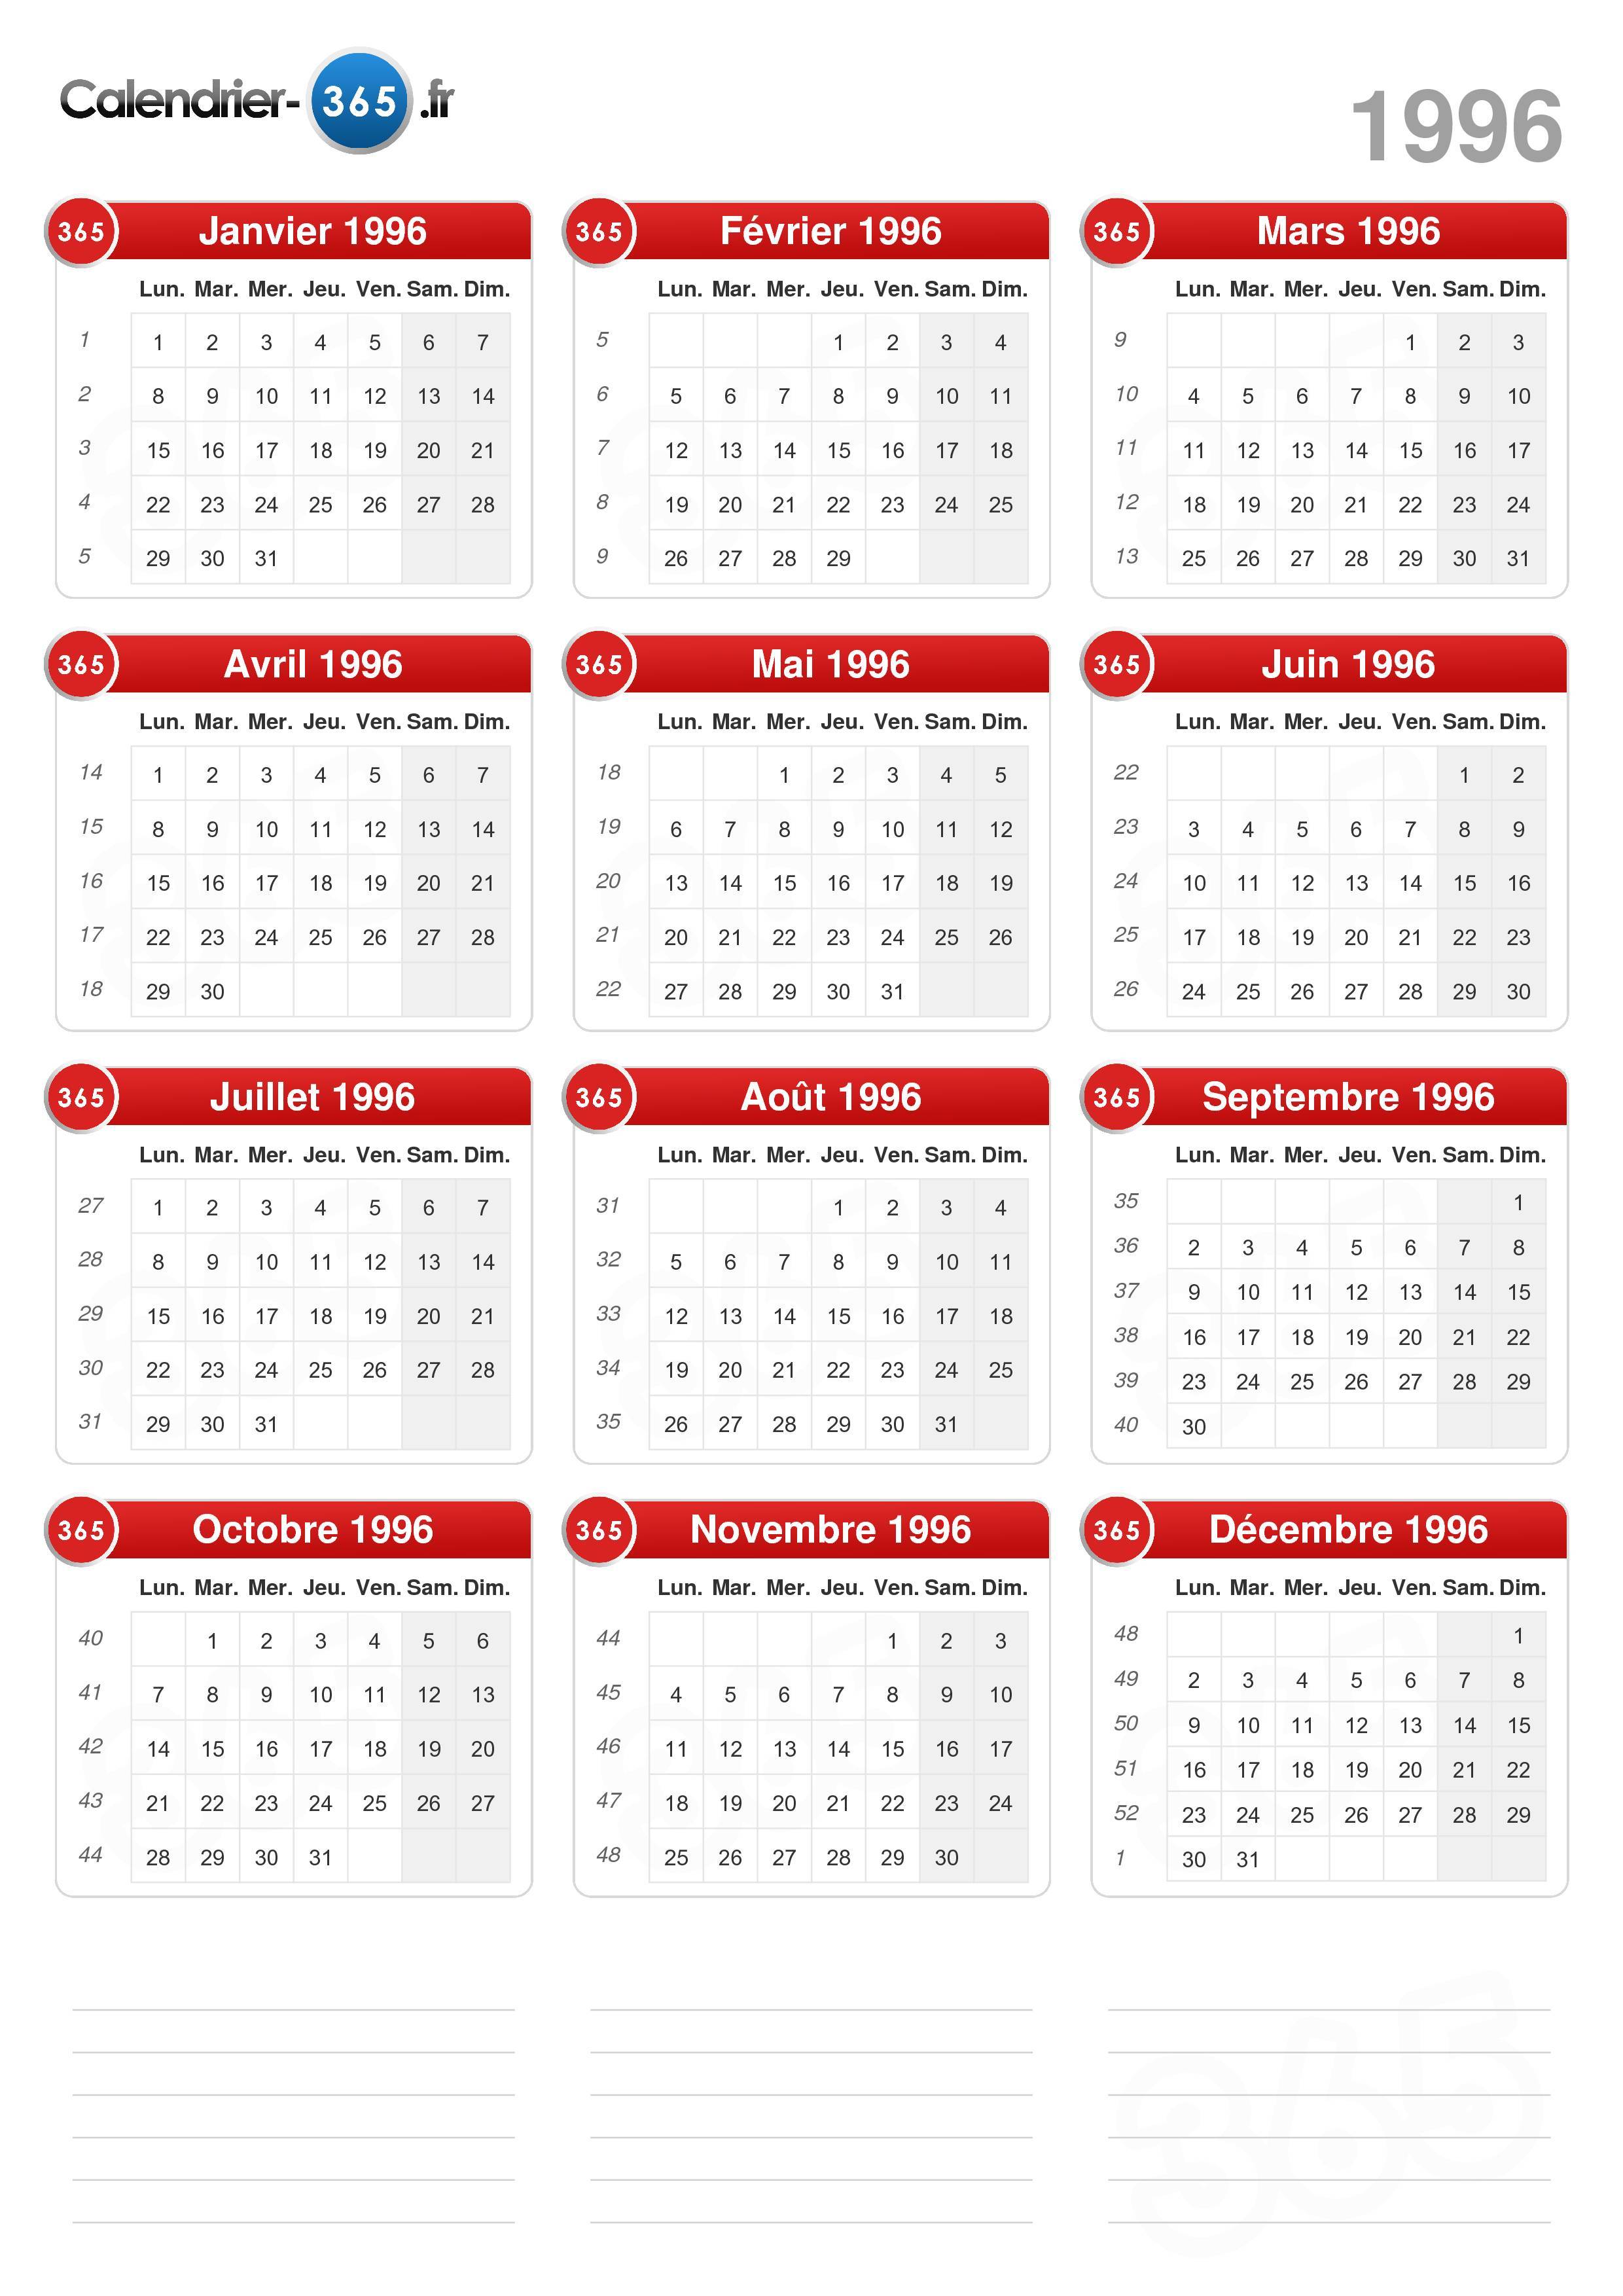 Pourquoi les calendriers de 1996 ont-ils la cote sur Internet ?